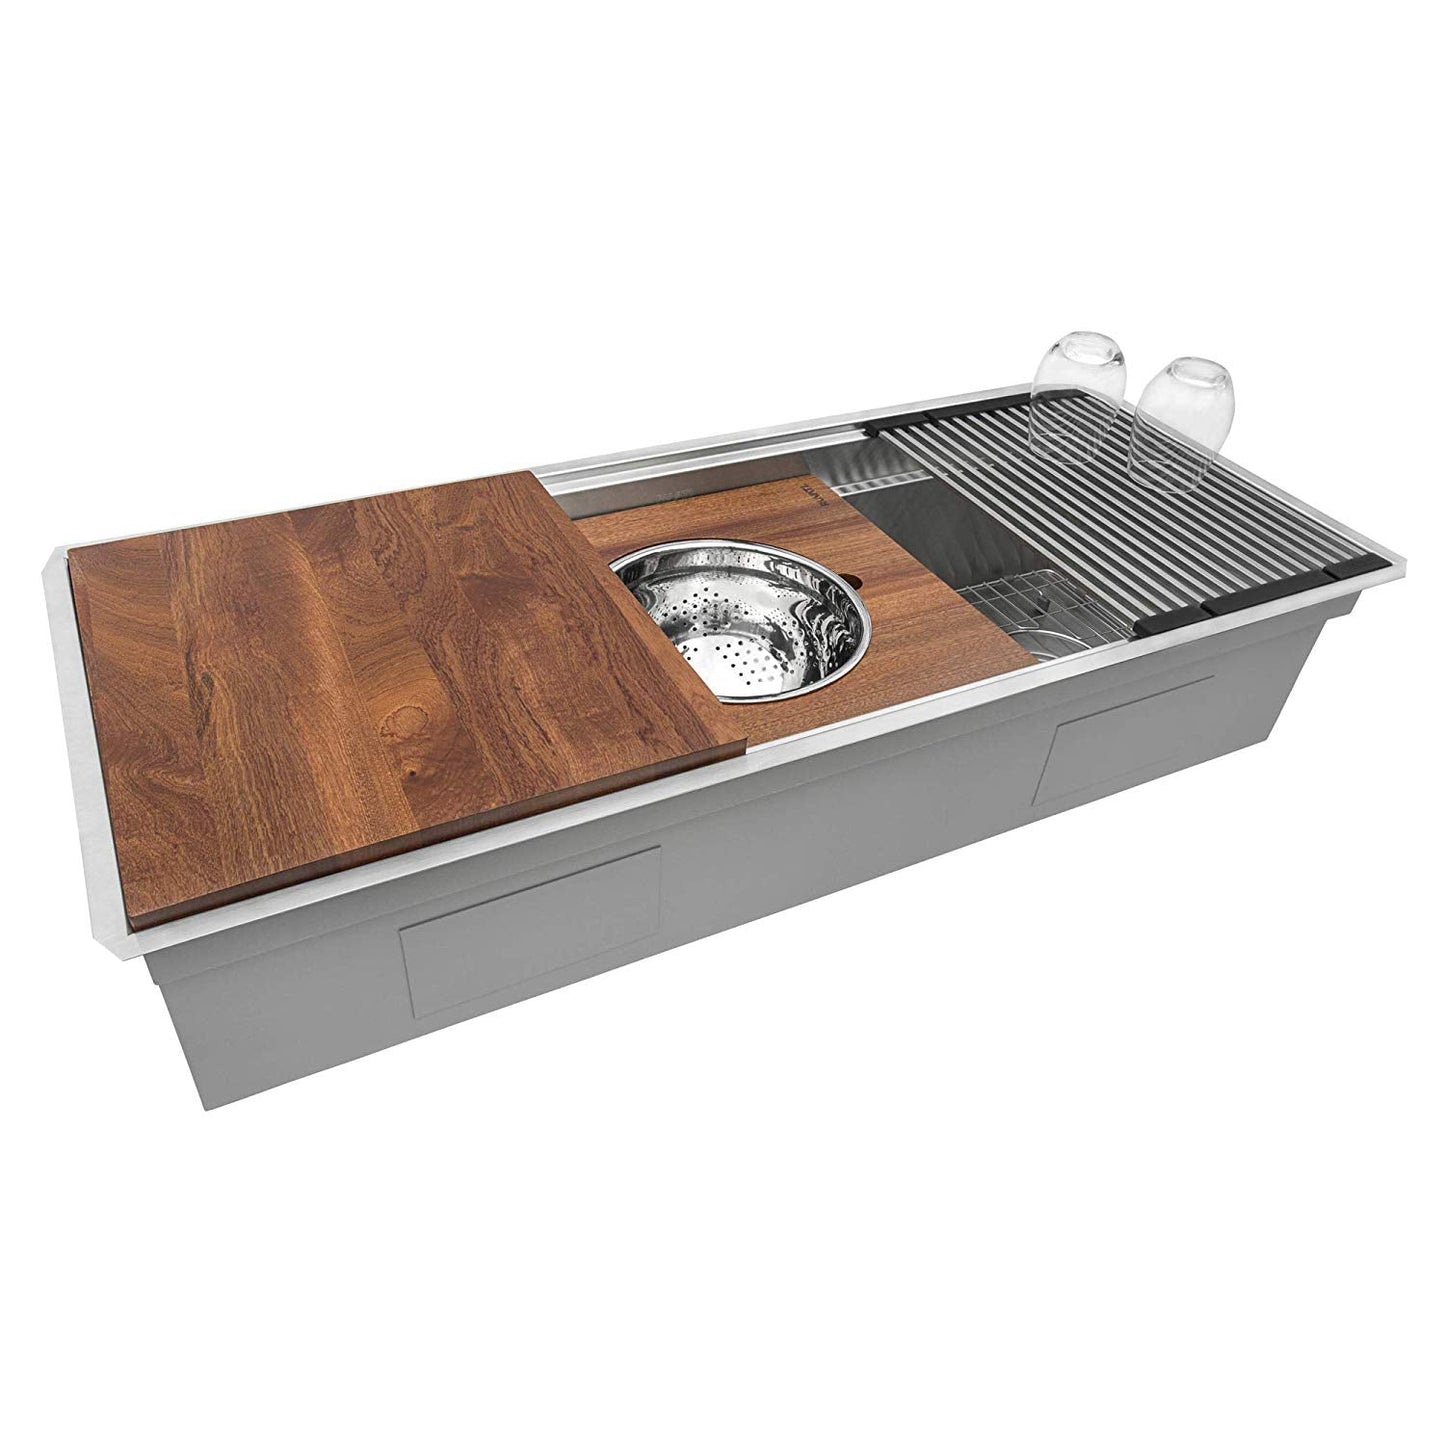 Ruvati 45-inch Workstation Two-Tiered Ledge Kitchen Sink Undermount 16 Gauge Stainless Steel - RVH8333